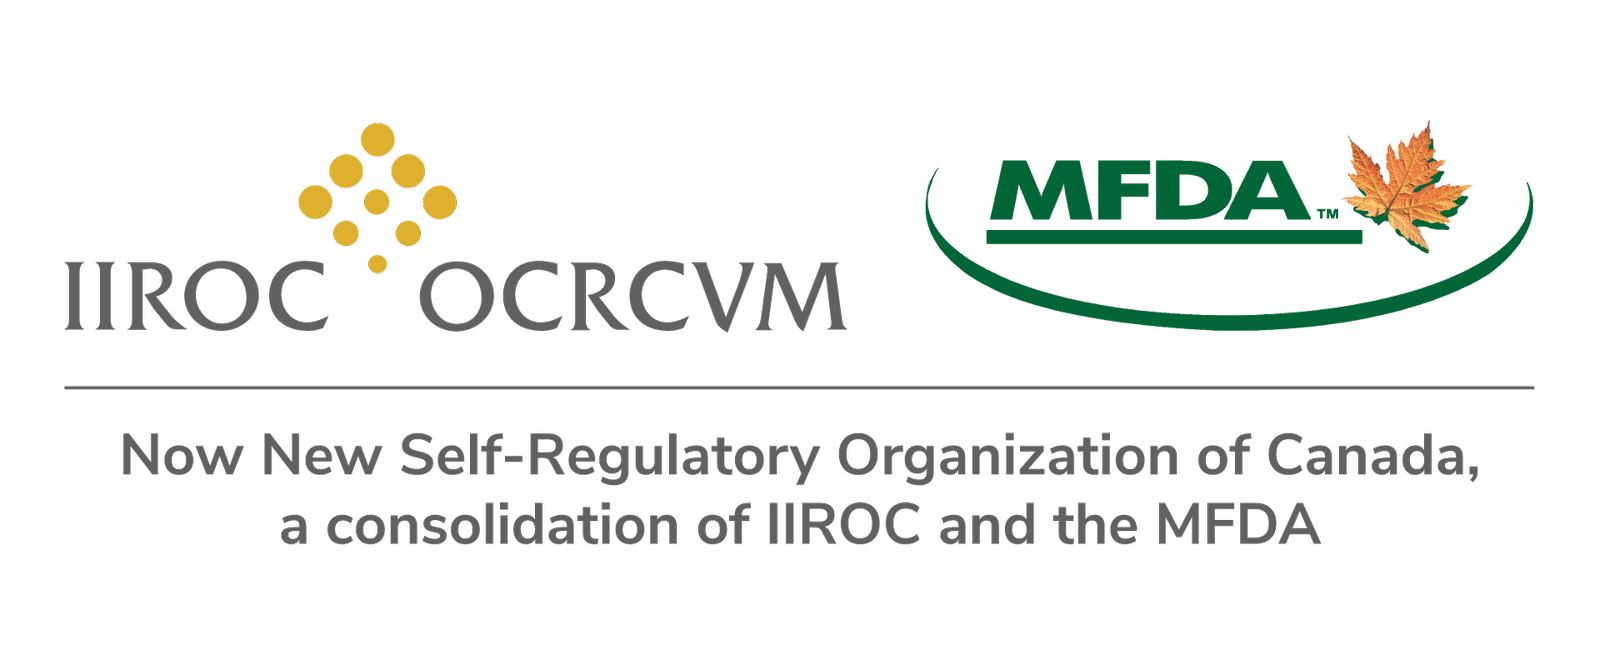 Logos of IIROC and MFDA